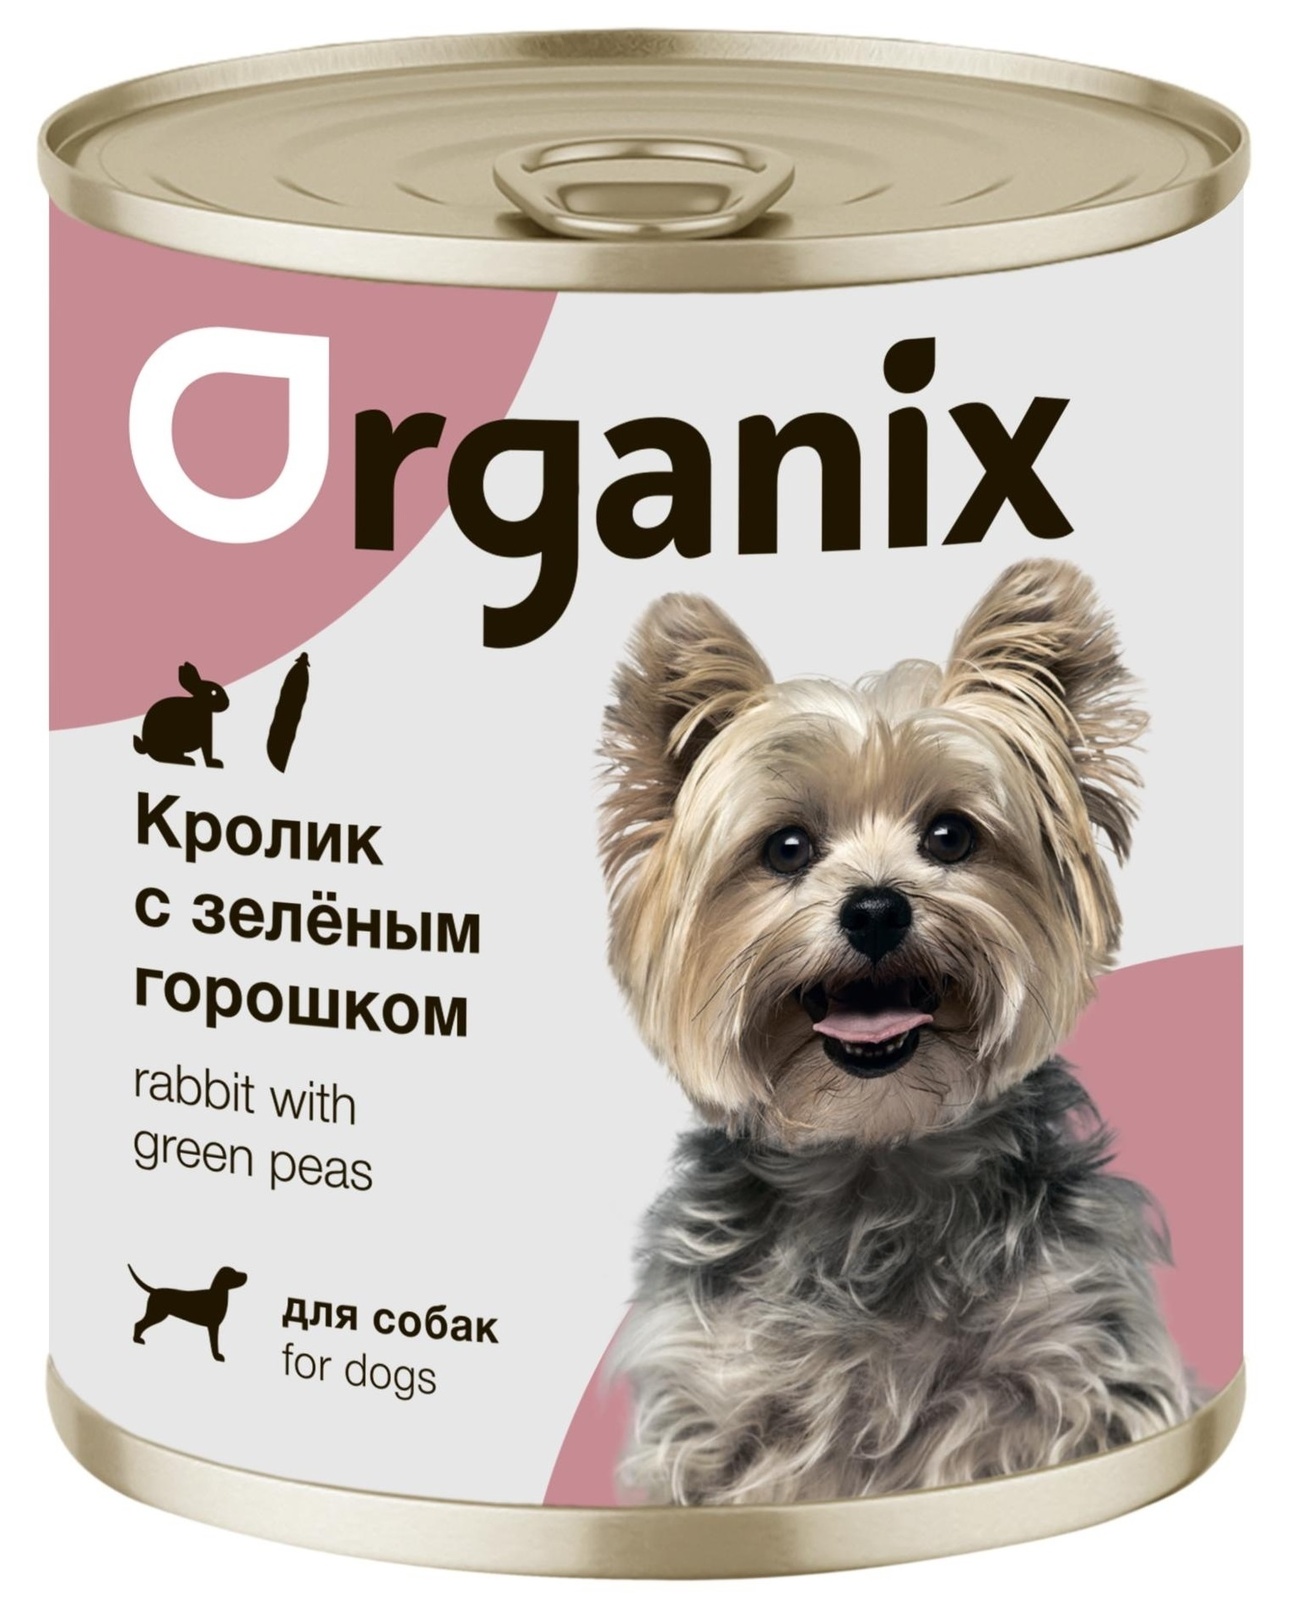 Organix консервы Organix консервы для собак Кролик с зеленым горошком (400 г) organix консервы organix консервы для собак утка индейка картофель 400 г